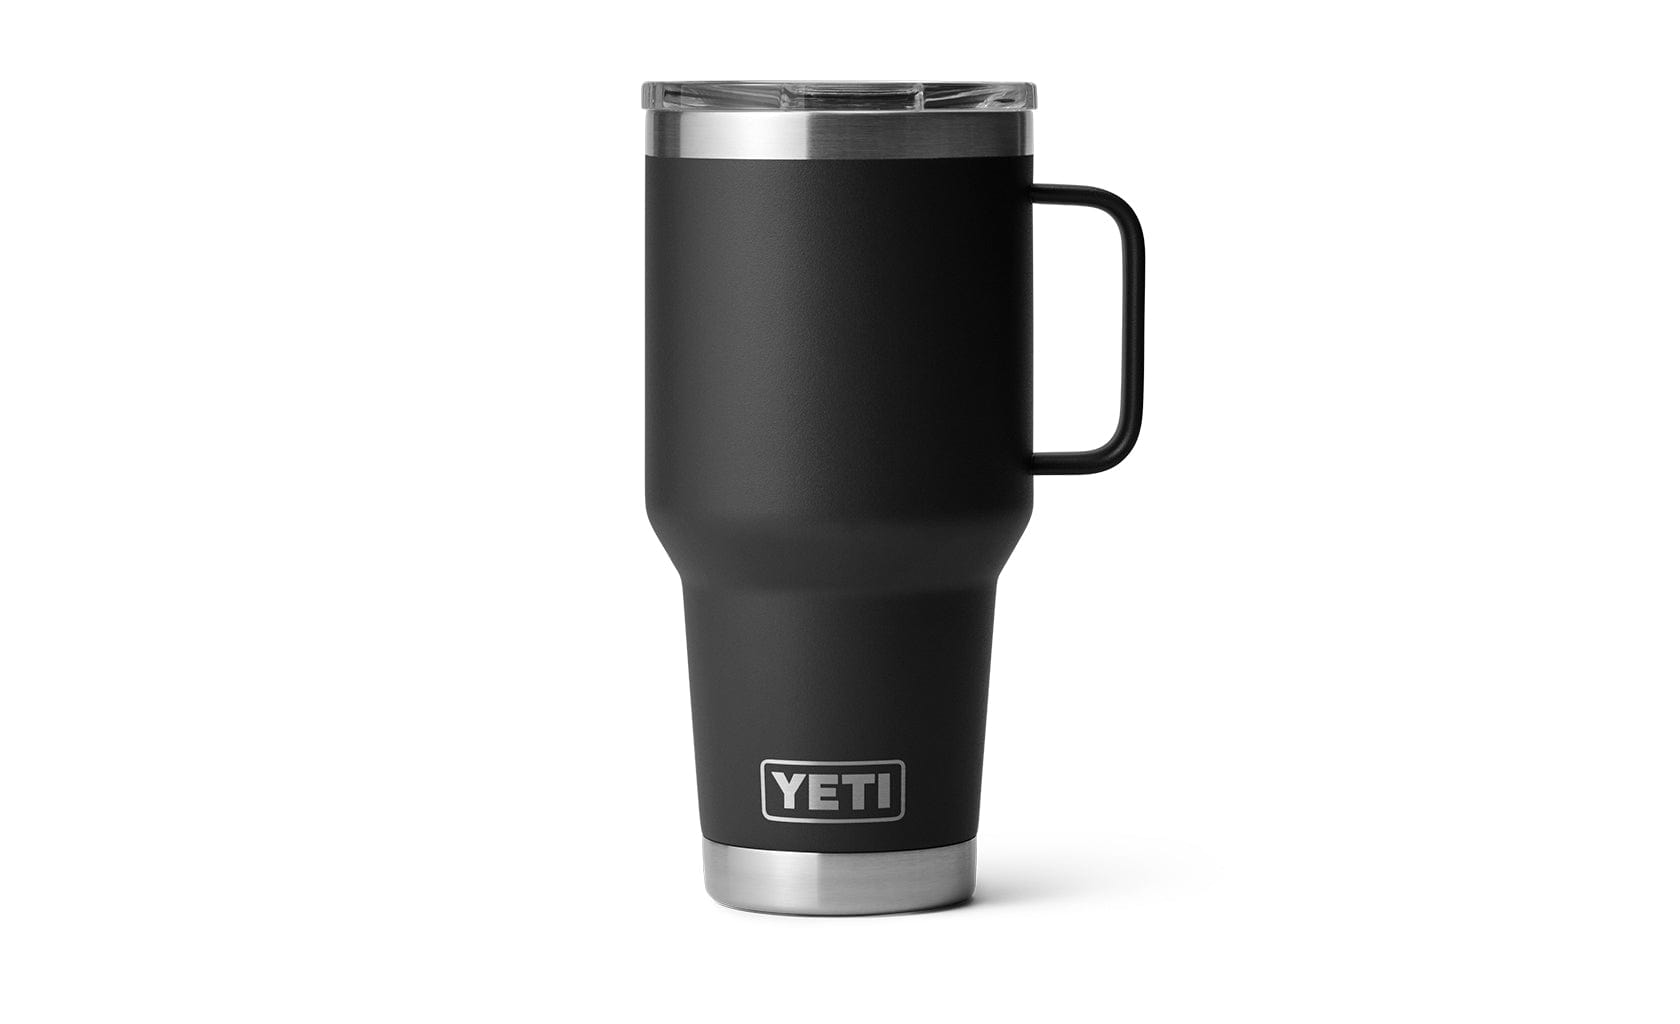 YETI Yeti Rambler 30 oz Travel Mug Black